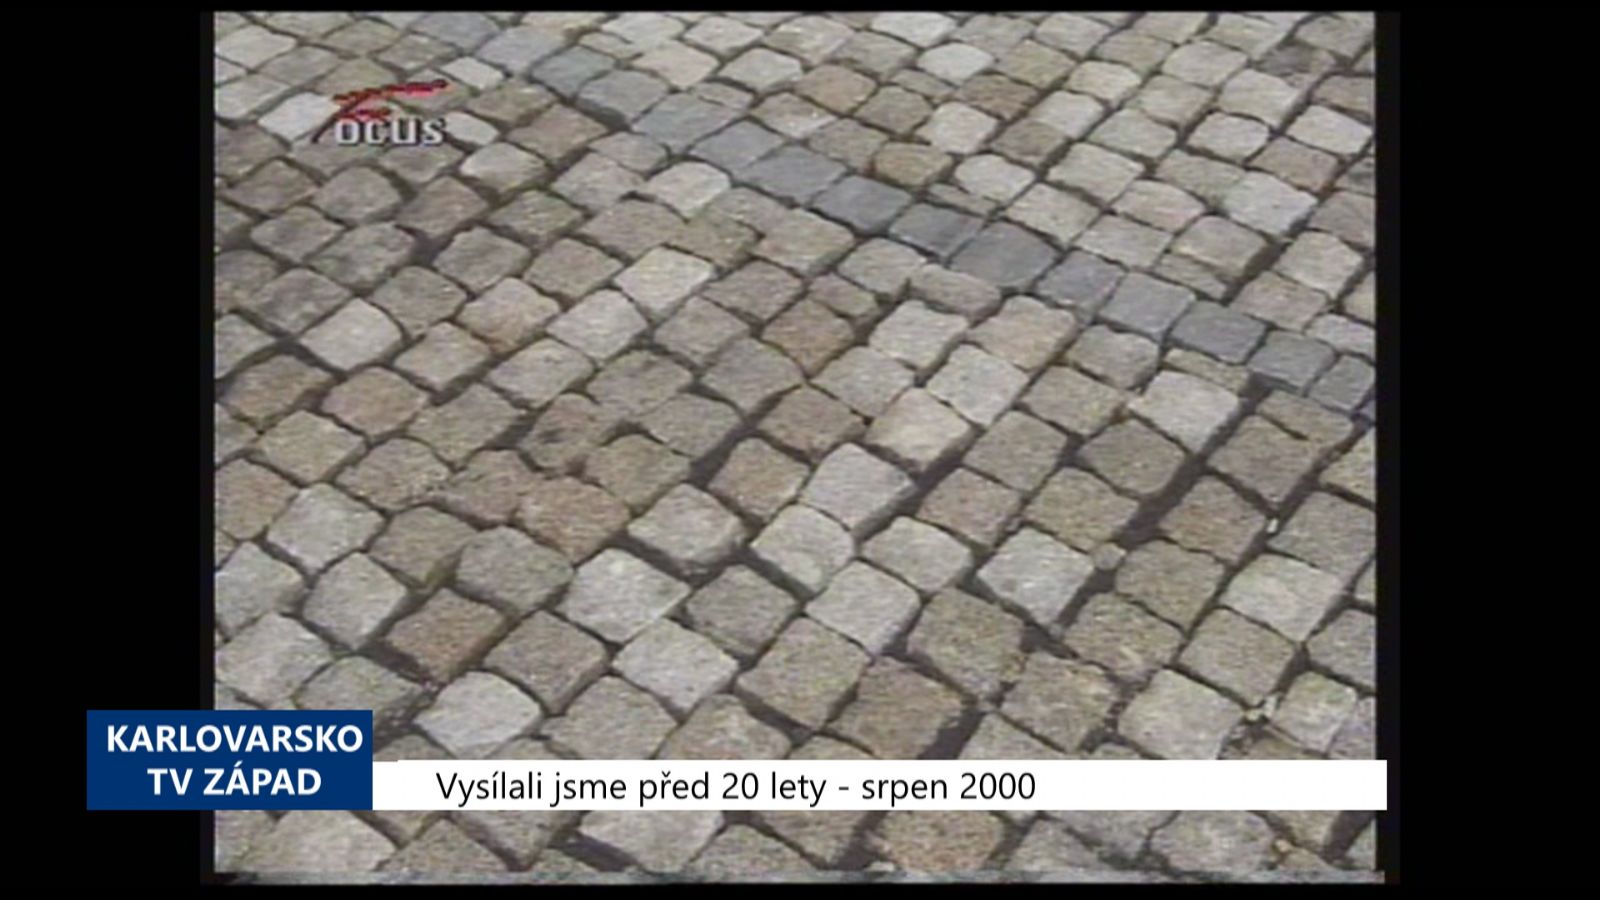 2000 – Cheb: Rekonstrukce Školní ulice vyšla na 3,6 milionu (TV Západ)